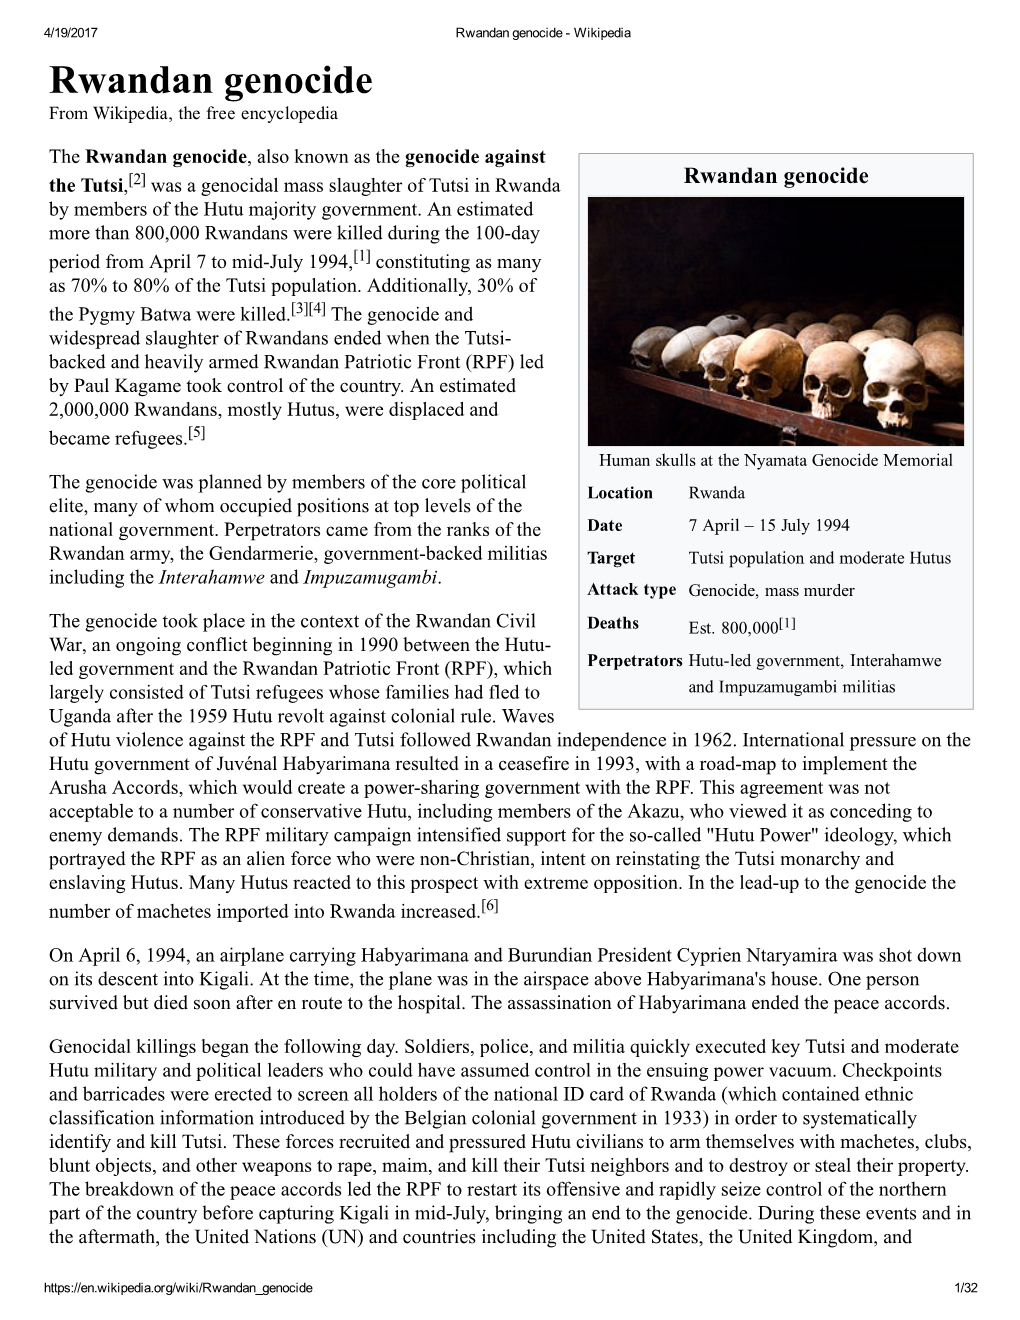 Rwandan Genocide ­ Wikipedia Rwandan Genocide from Wikipedia, the Free Encyclopedia